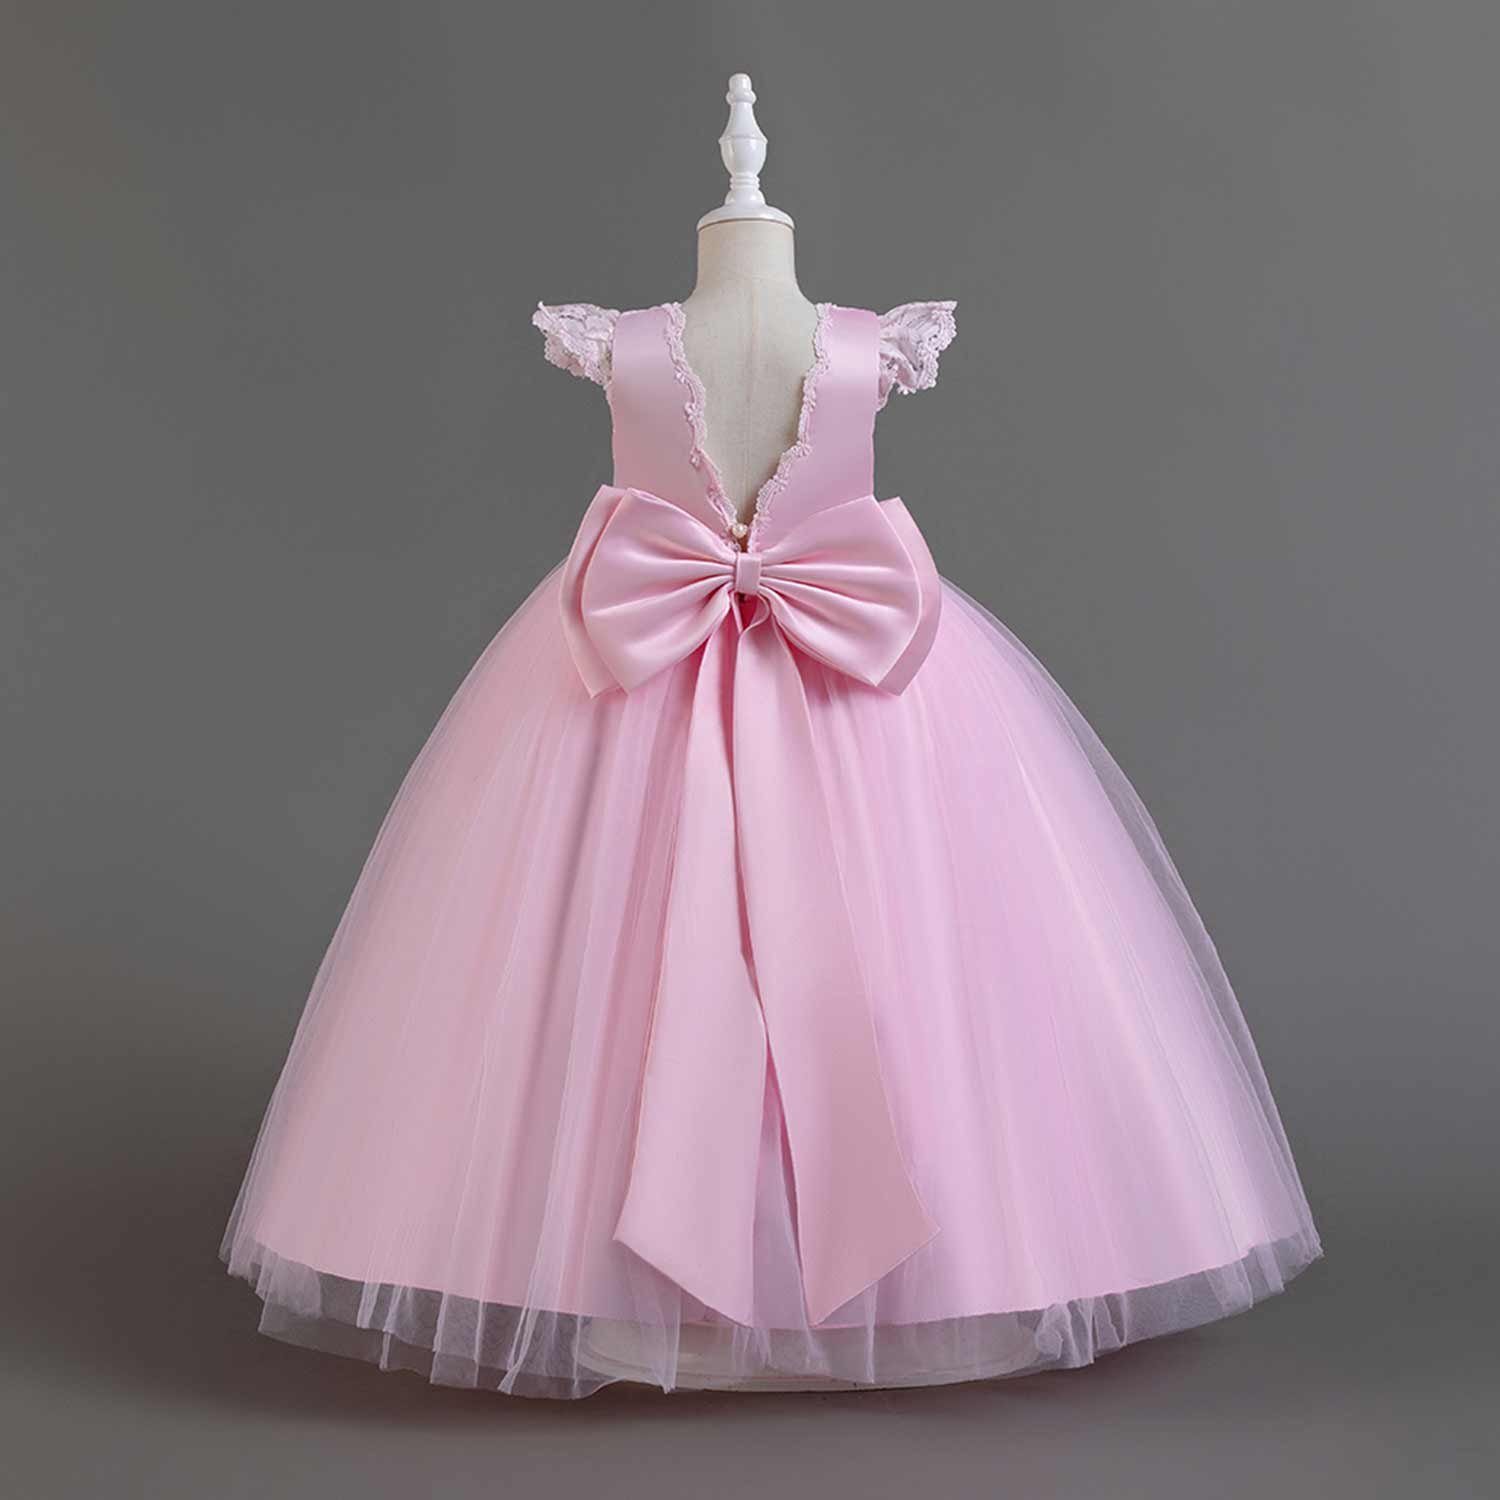 Daisred Abendkleid Kinderkleider Prinzessinnenkleid Rosa Tüllkleider Blumenmädchen